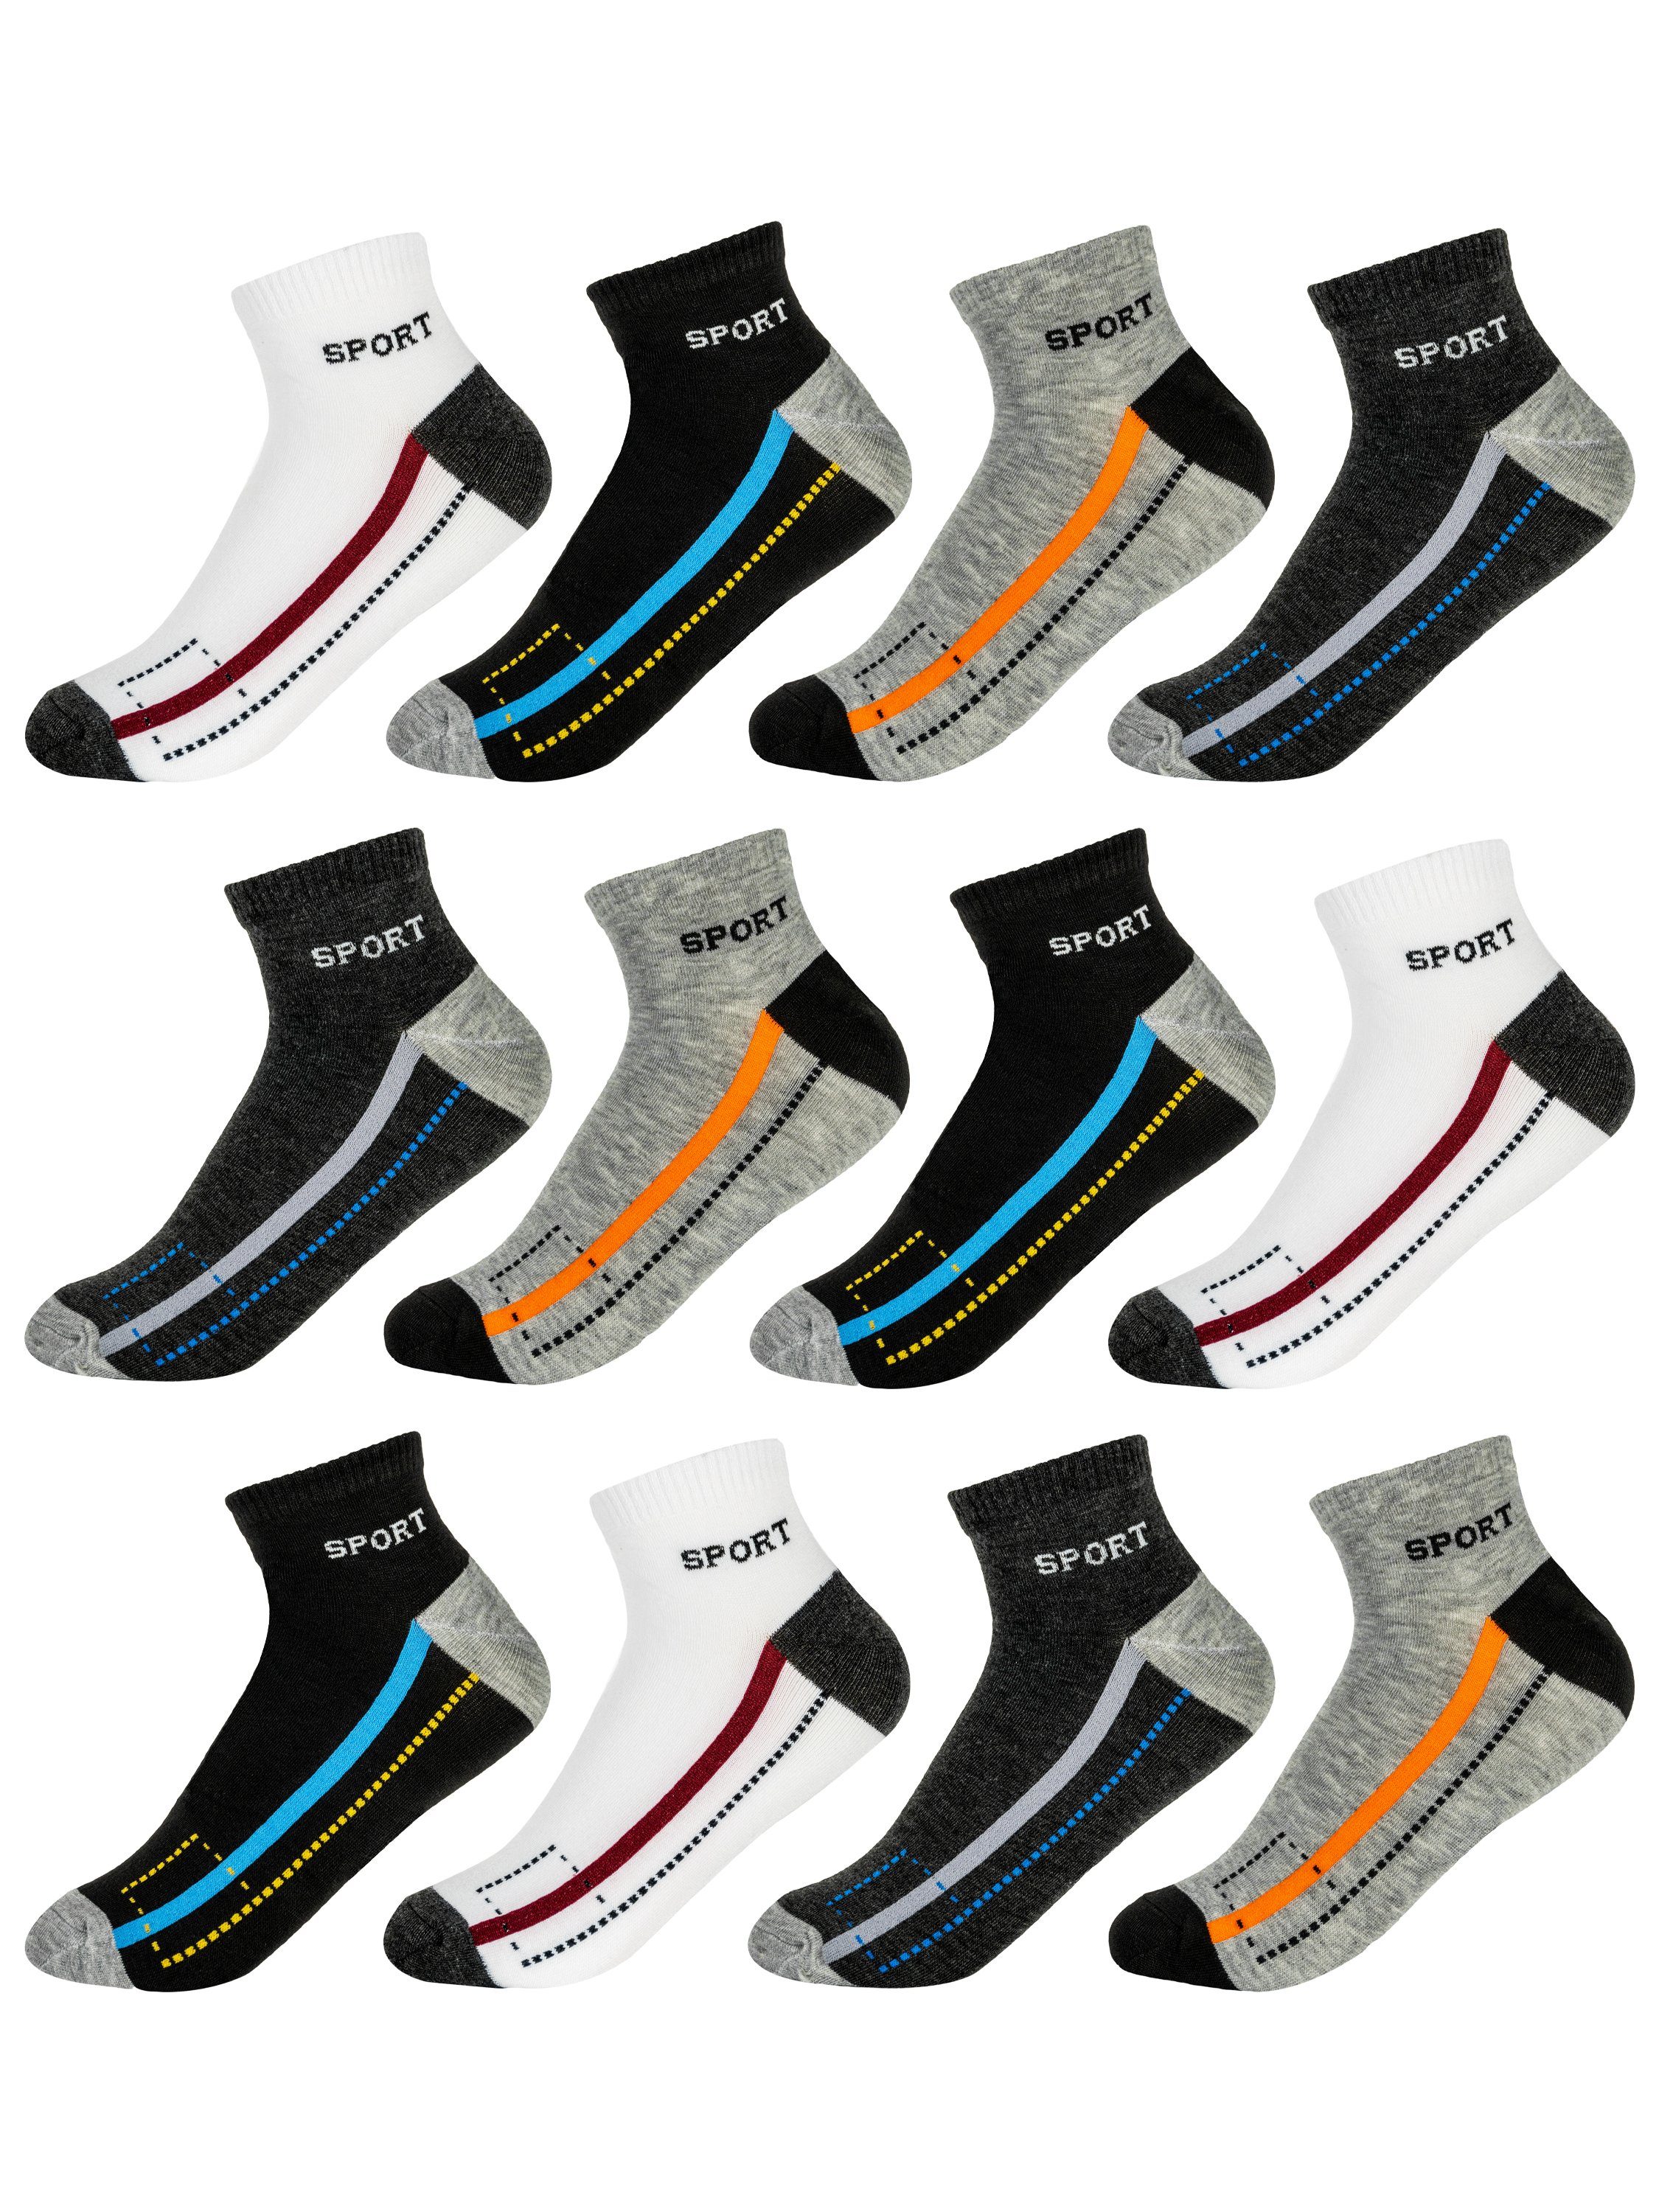 TEXEMP Sneakersocken 12 Paar Sneaker Socken Sport Freizeit Herren Damen Socken Baumwolle Kurz Socken 39-42 43-46 (Packung, 12 Paar)